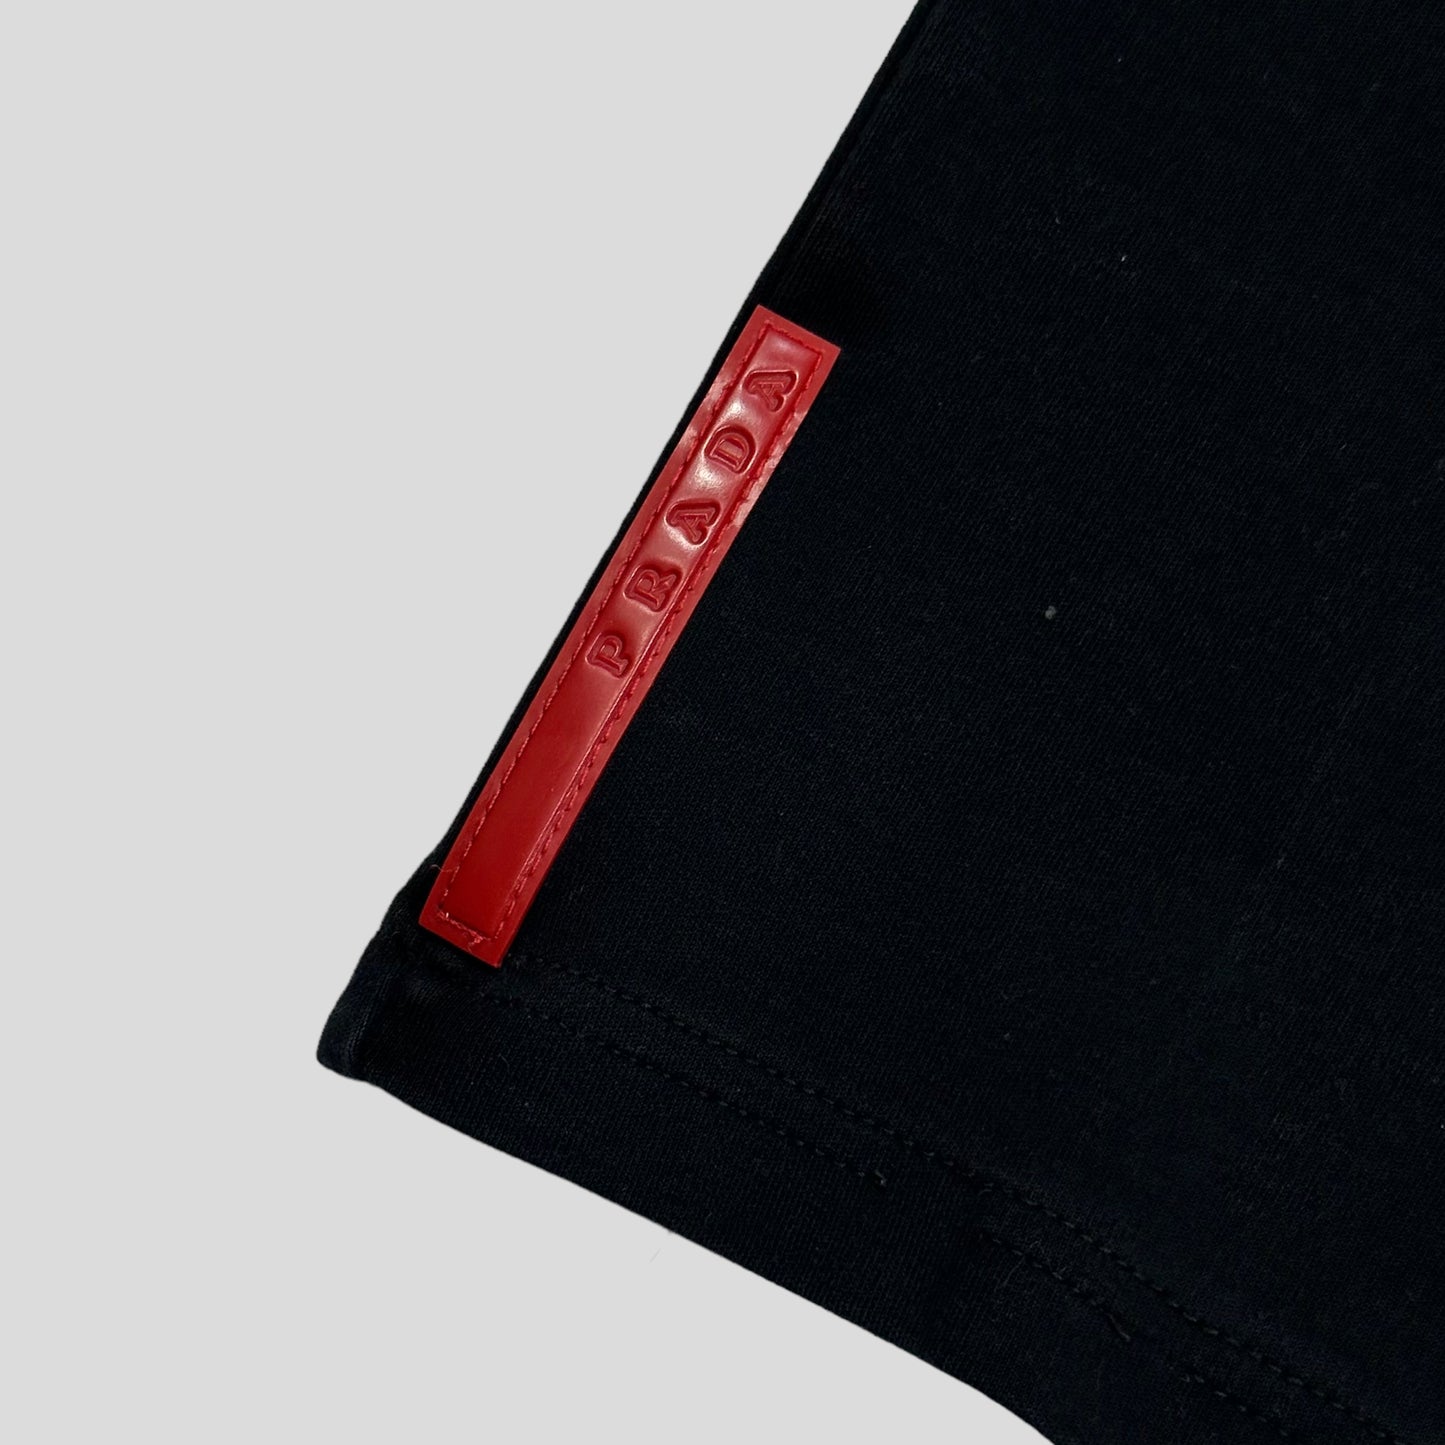 Prada Sport 00’s Boxy Black Red Tab T-shirt - M